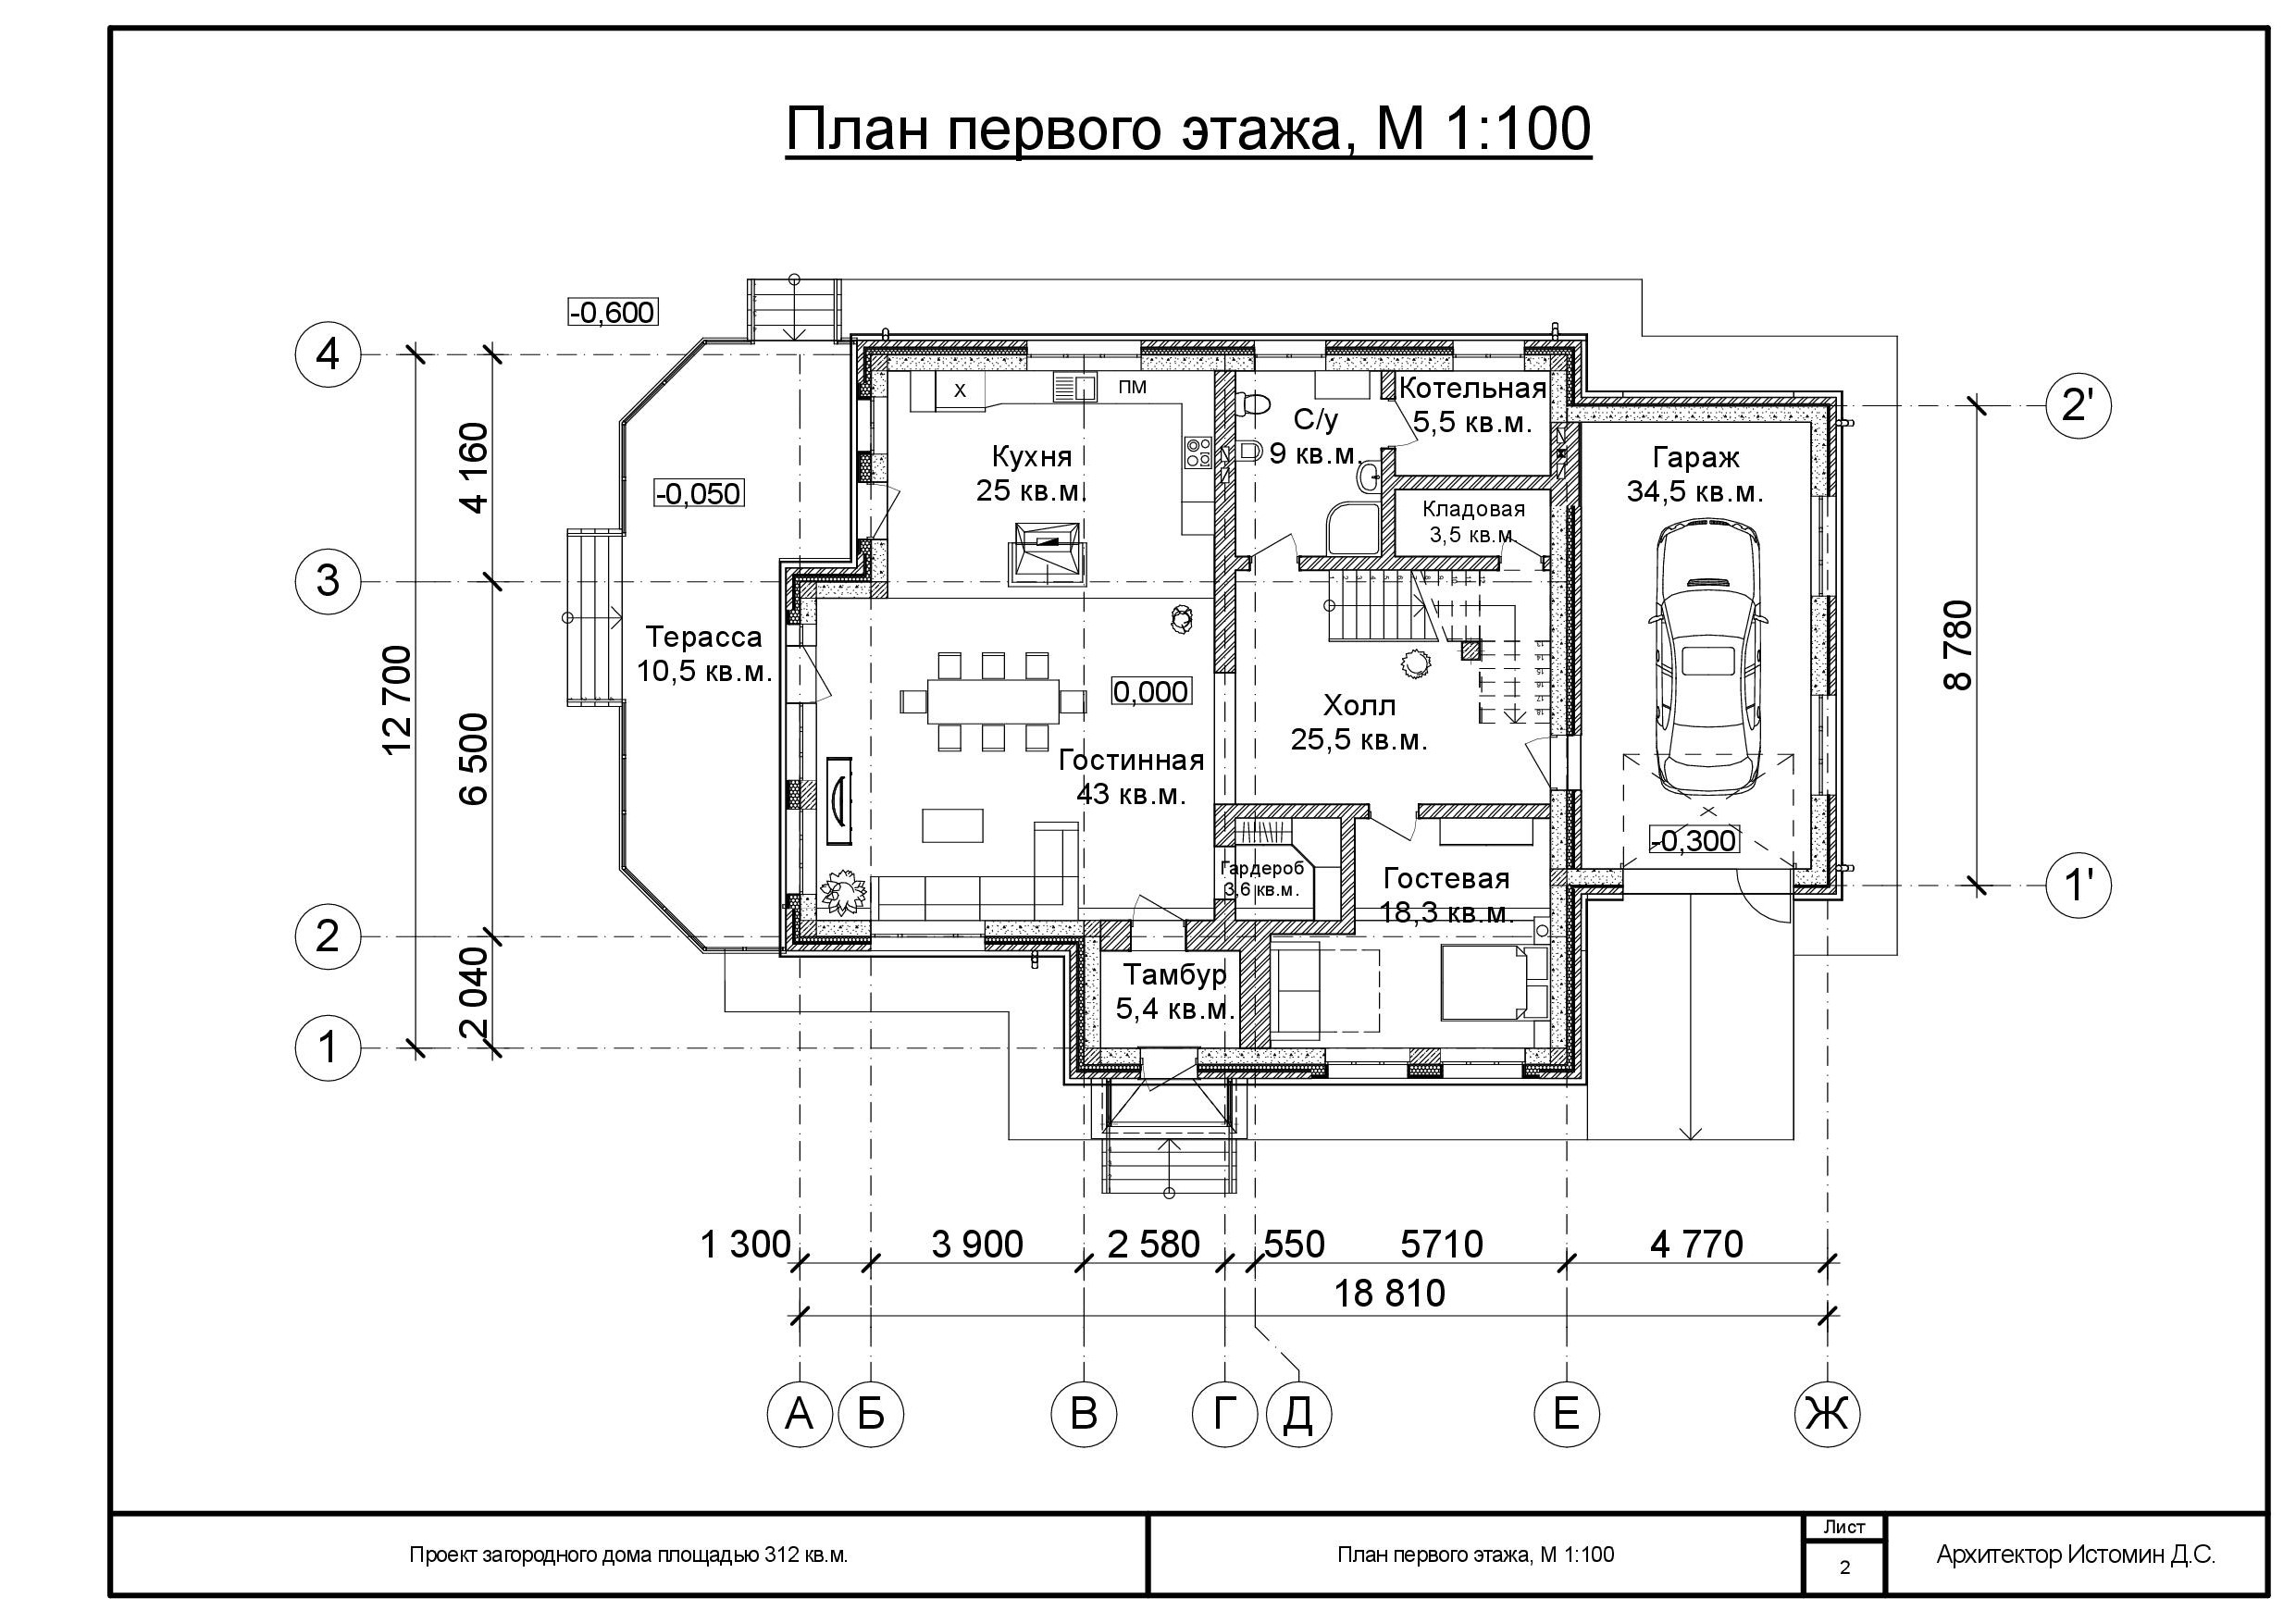 Планы этажей частного дома. План первого этажа частного дома чертежи с размерами. План первого этажа чертеж с размерами по ГОСТУ. План первого этажа жилого дома чертеж с размерами. План первого этажа частного дома чертежи.